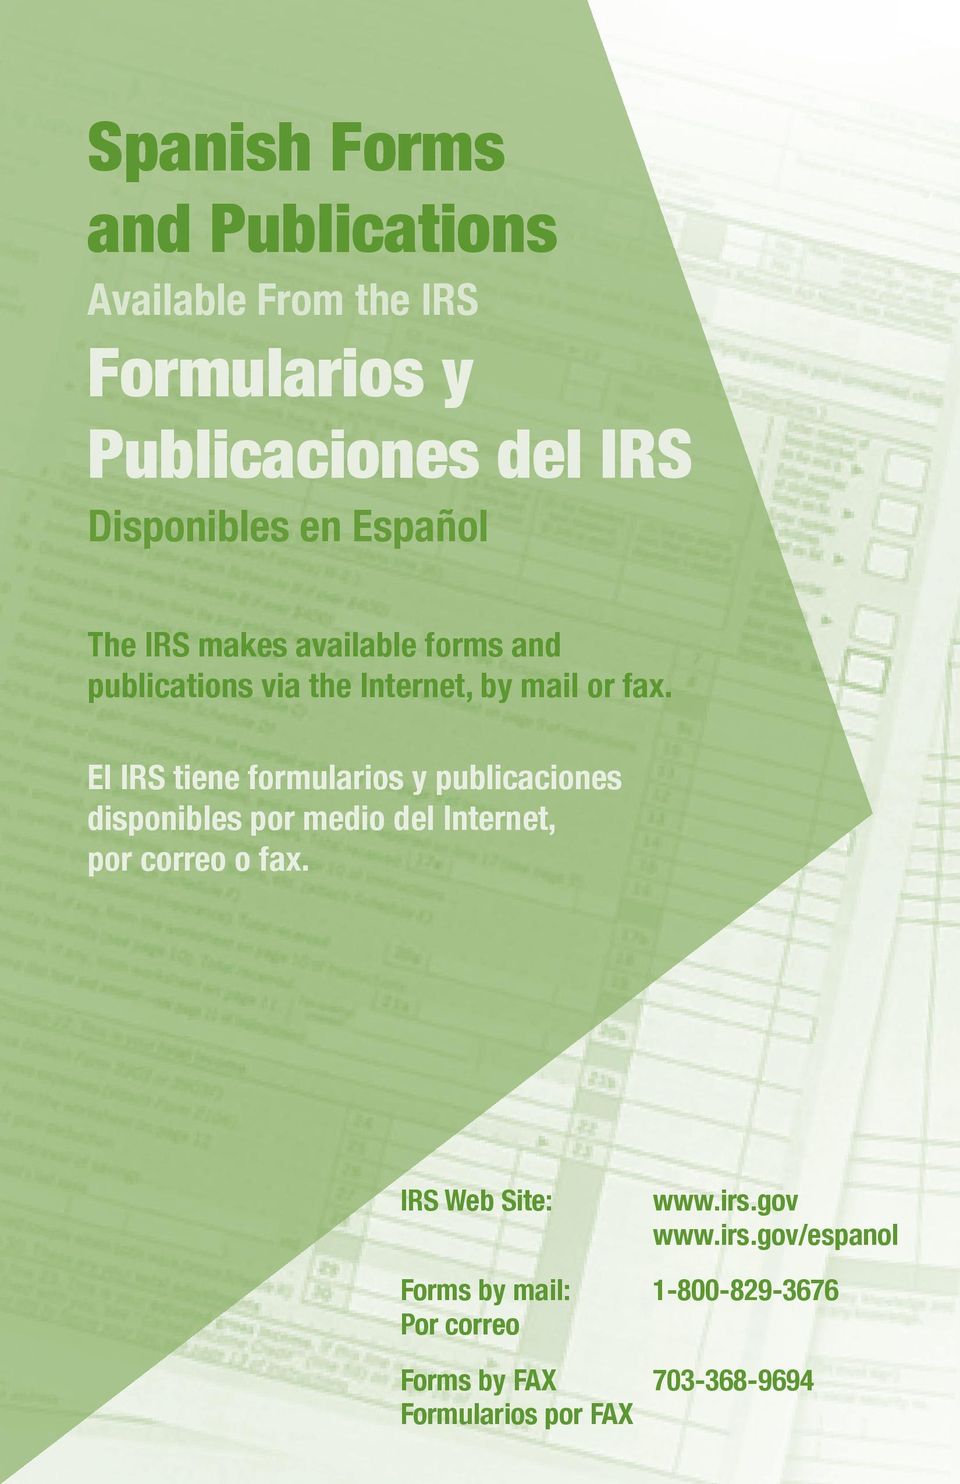 El IRS tiene formularios y publicaciones disponibles por medio del Internet, por correo o fax.